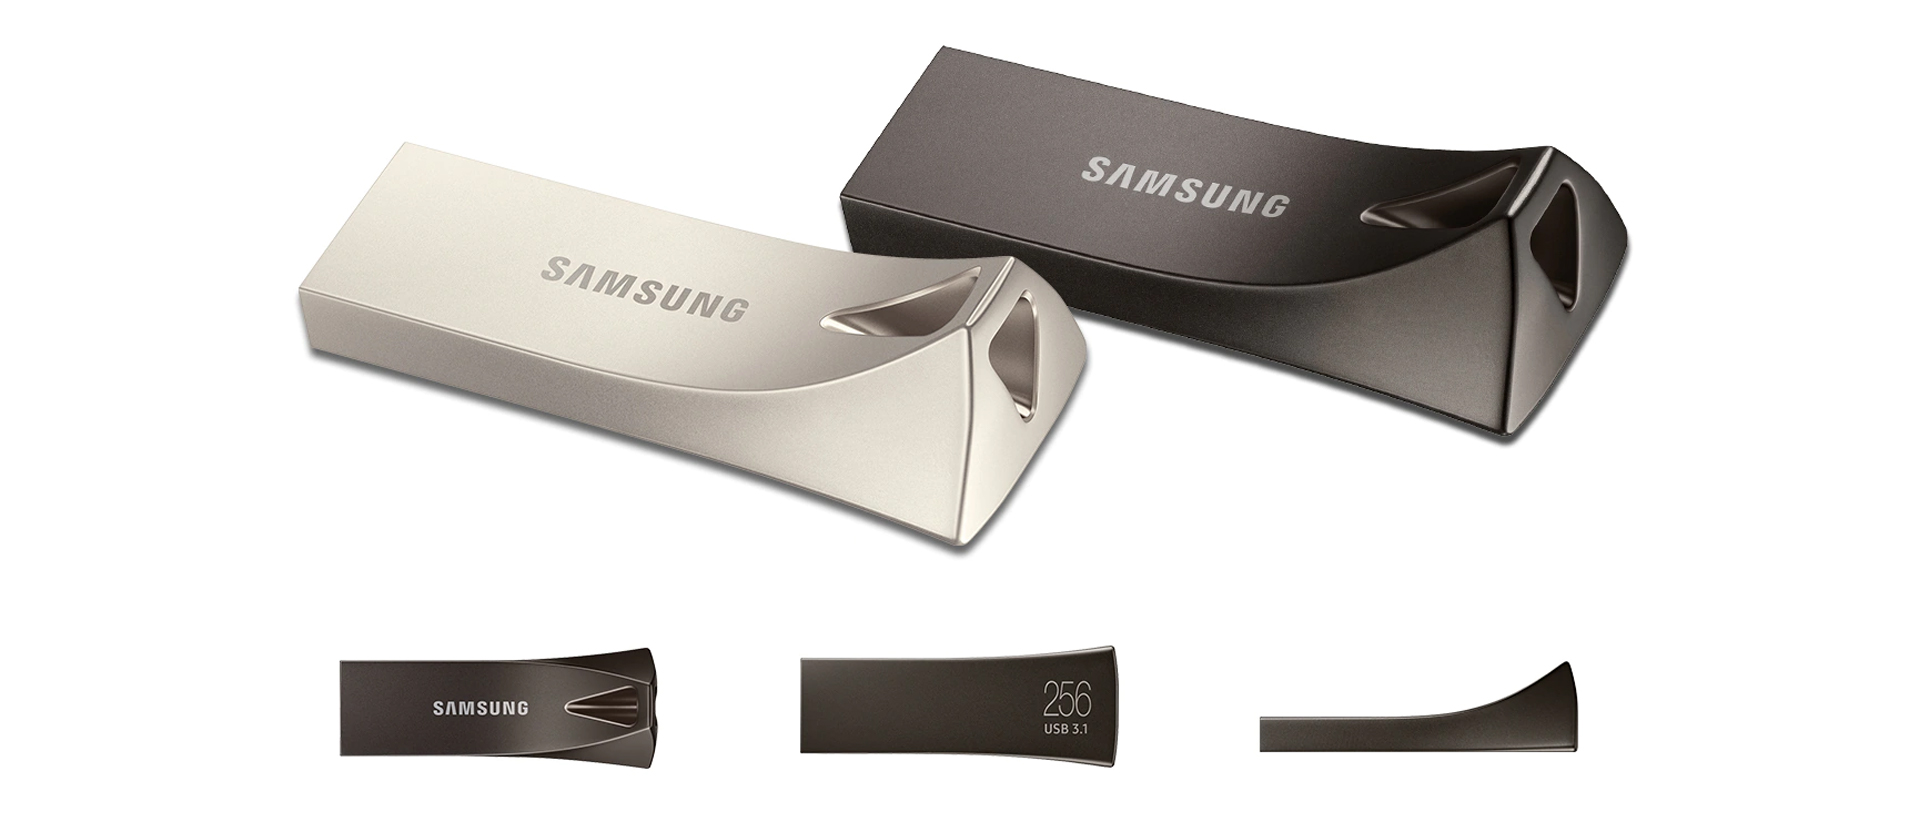 Samsung Bar Plus - синергия надежности, скорости и стиля